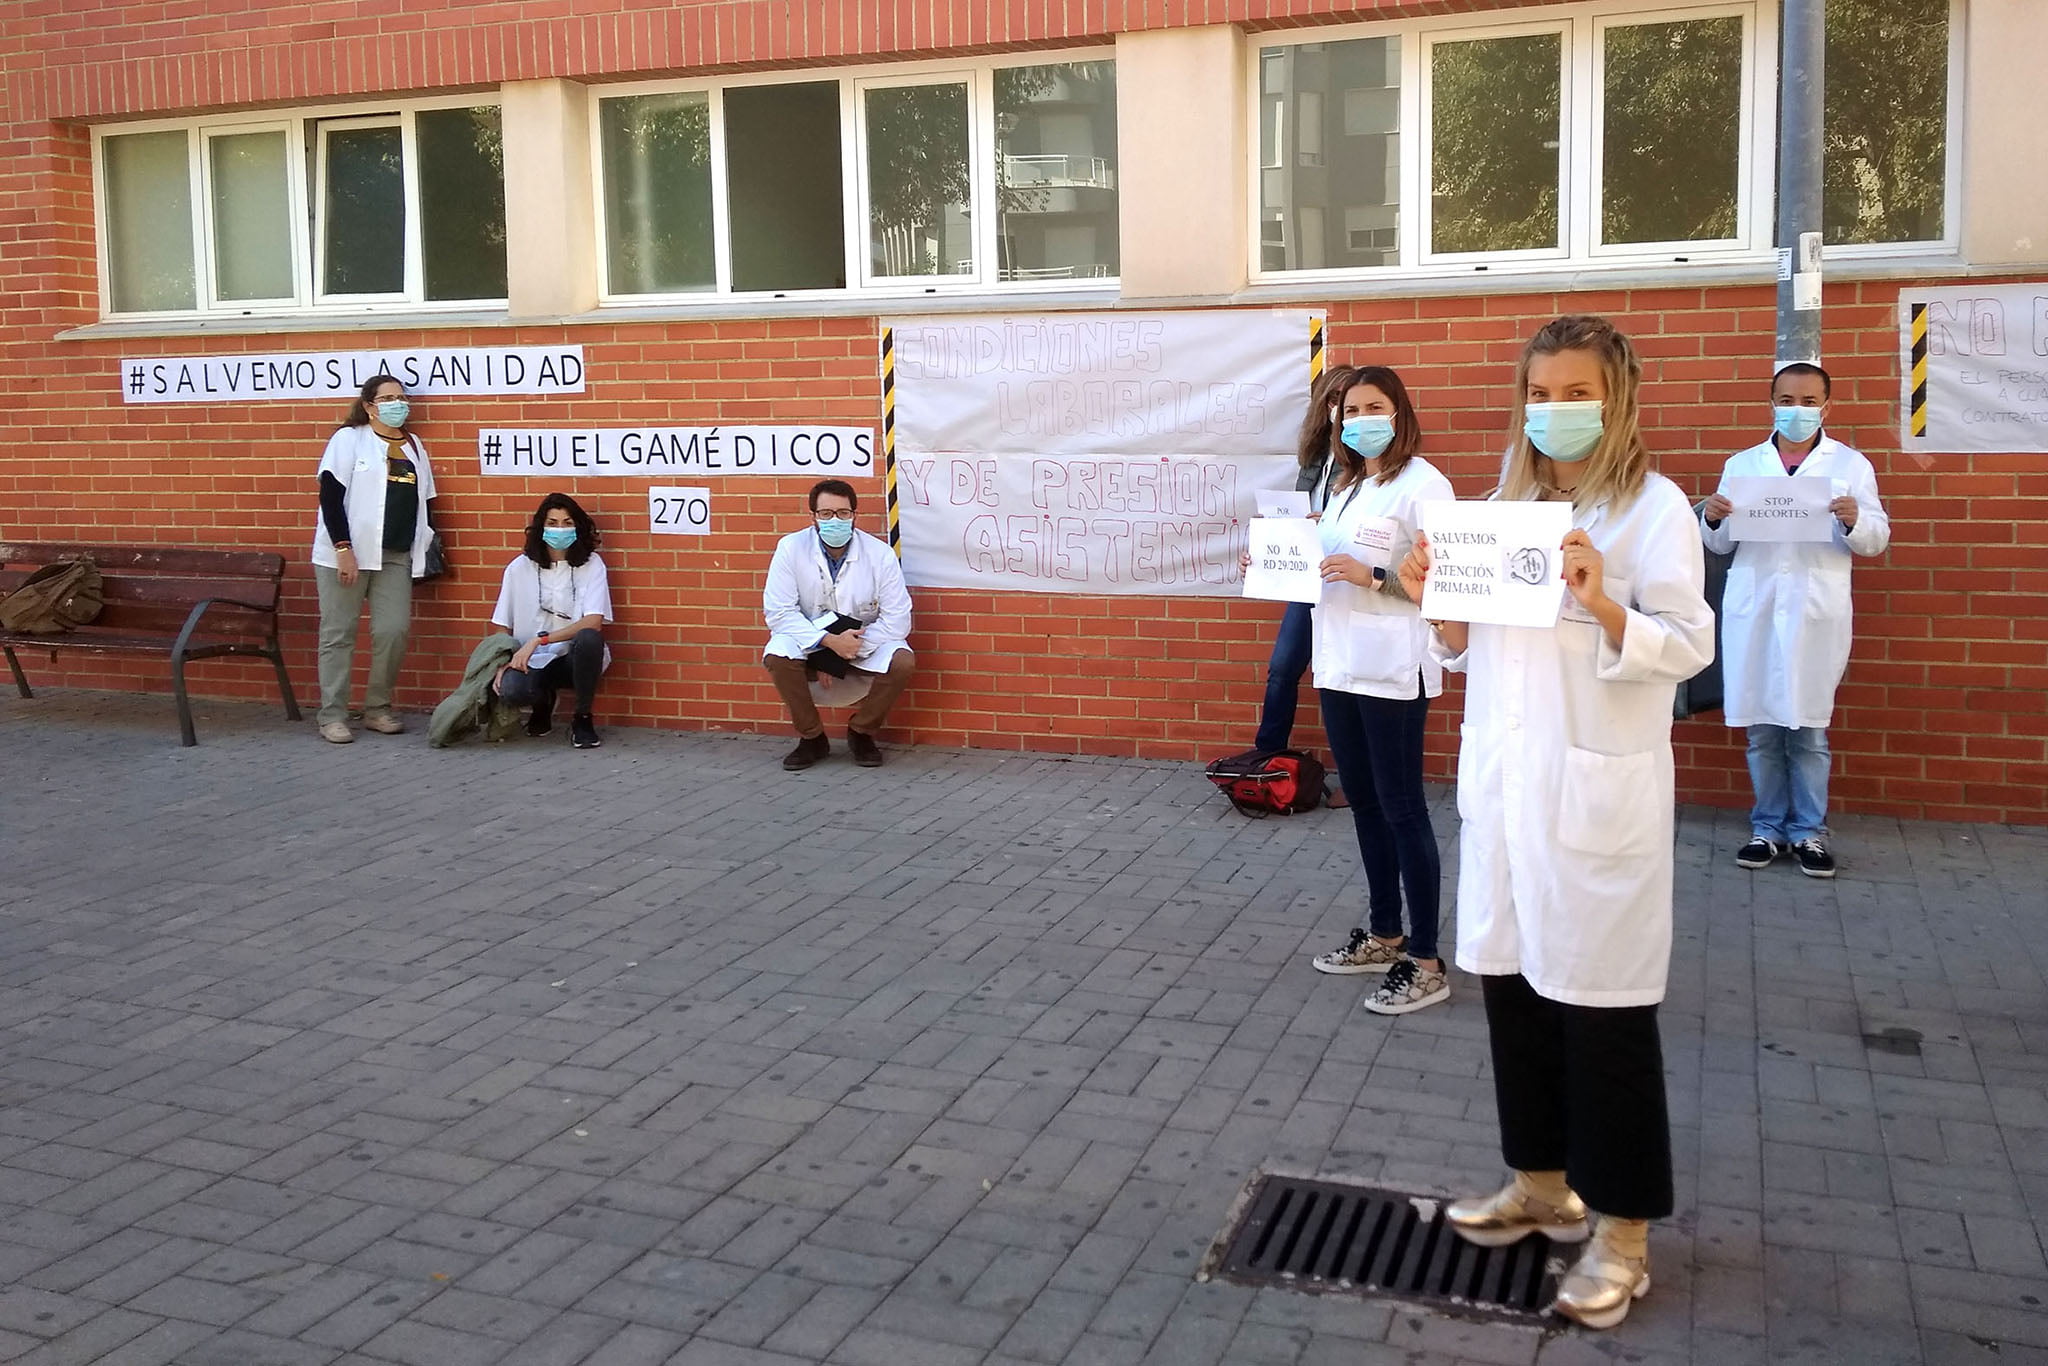 Personal del ambulatorio dianense apoyando la huelga de médicos | Tino Calvo